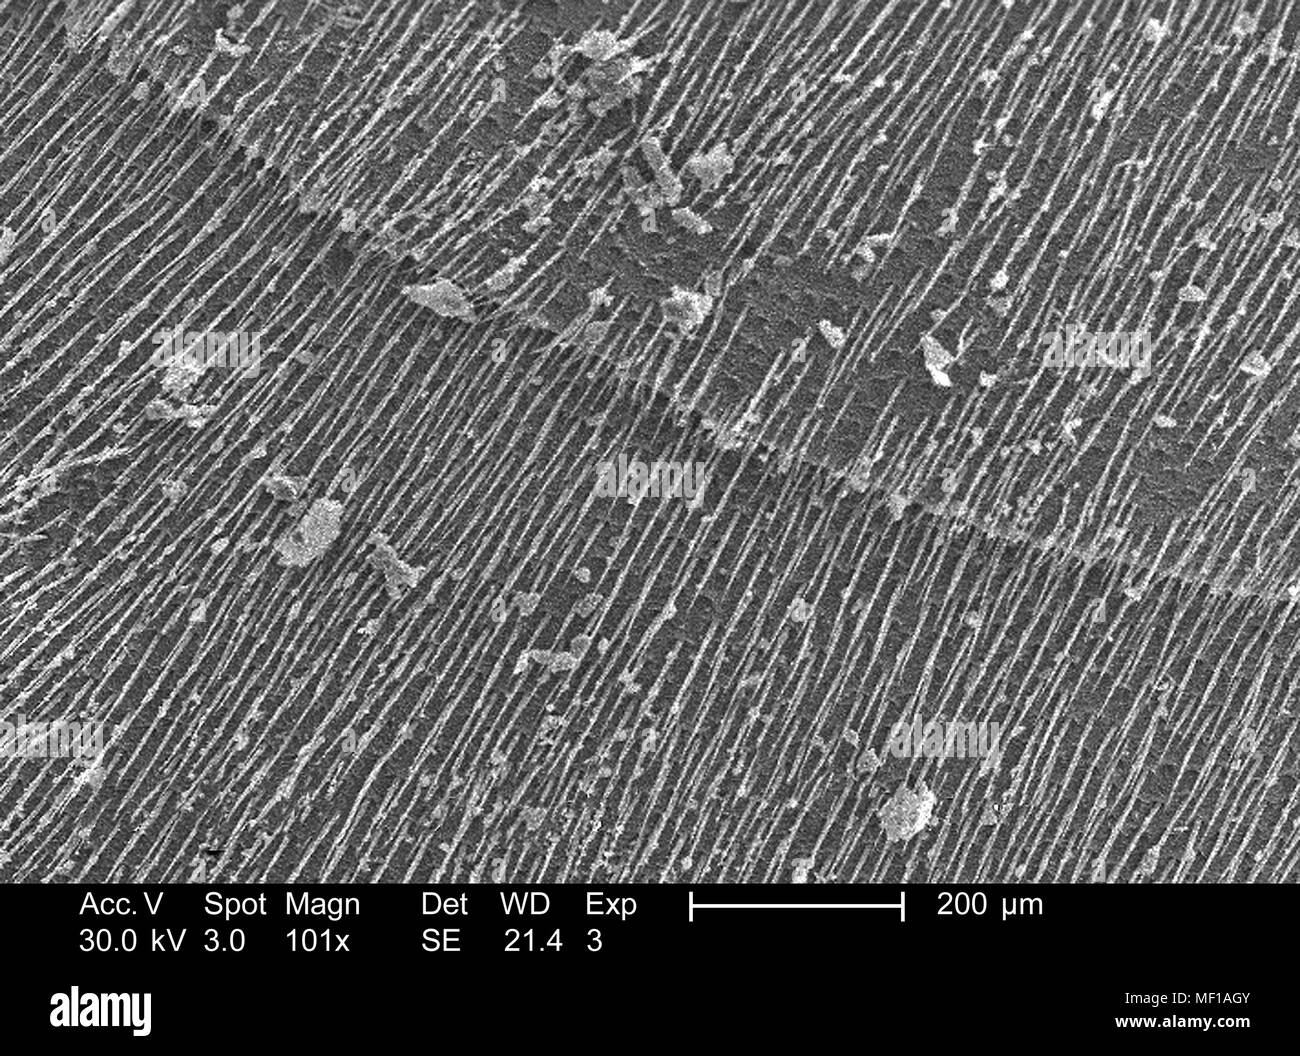 Nicht identifizierte Wasp Flügel beschichtet mit sensorischen Haare (setae), in der 101 x vergrößert dargestellt Rasterelektronenmikroskopische (SEM) Bild, 2005. Mit freundlicher Seuchenkontrollzentren (CDC)/Janice Haney Carr. () Stockfoto